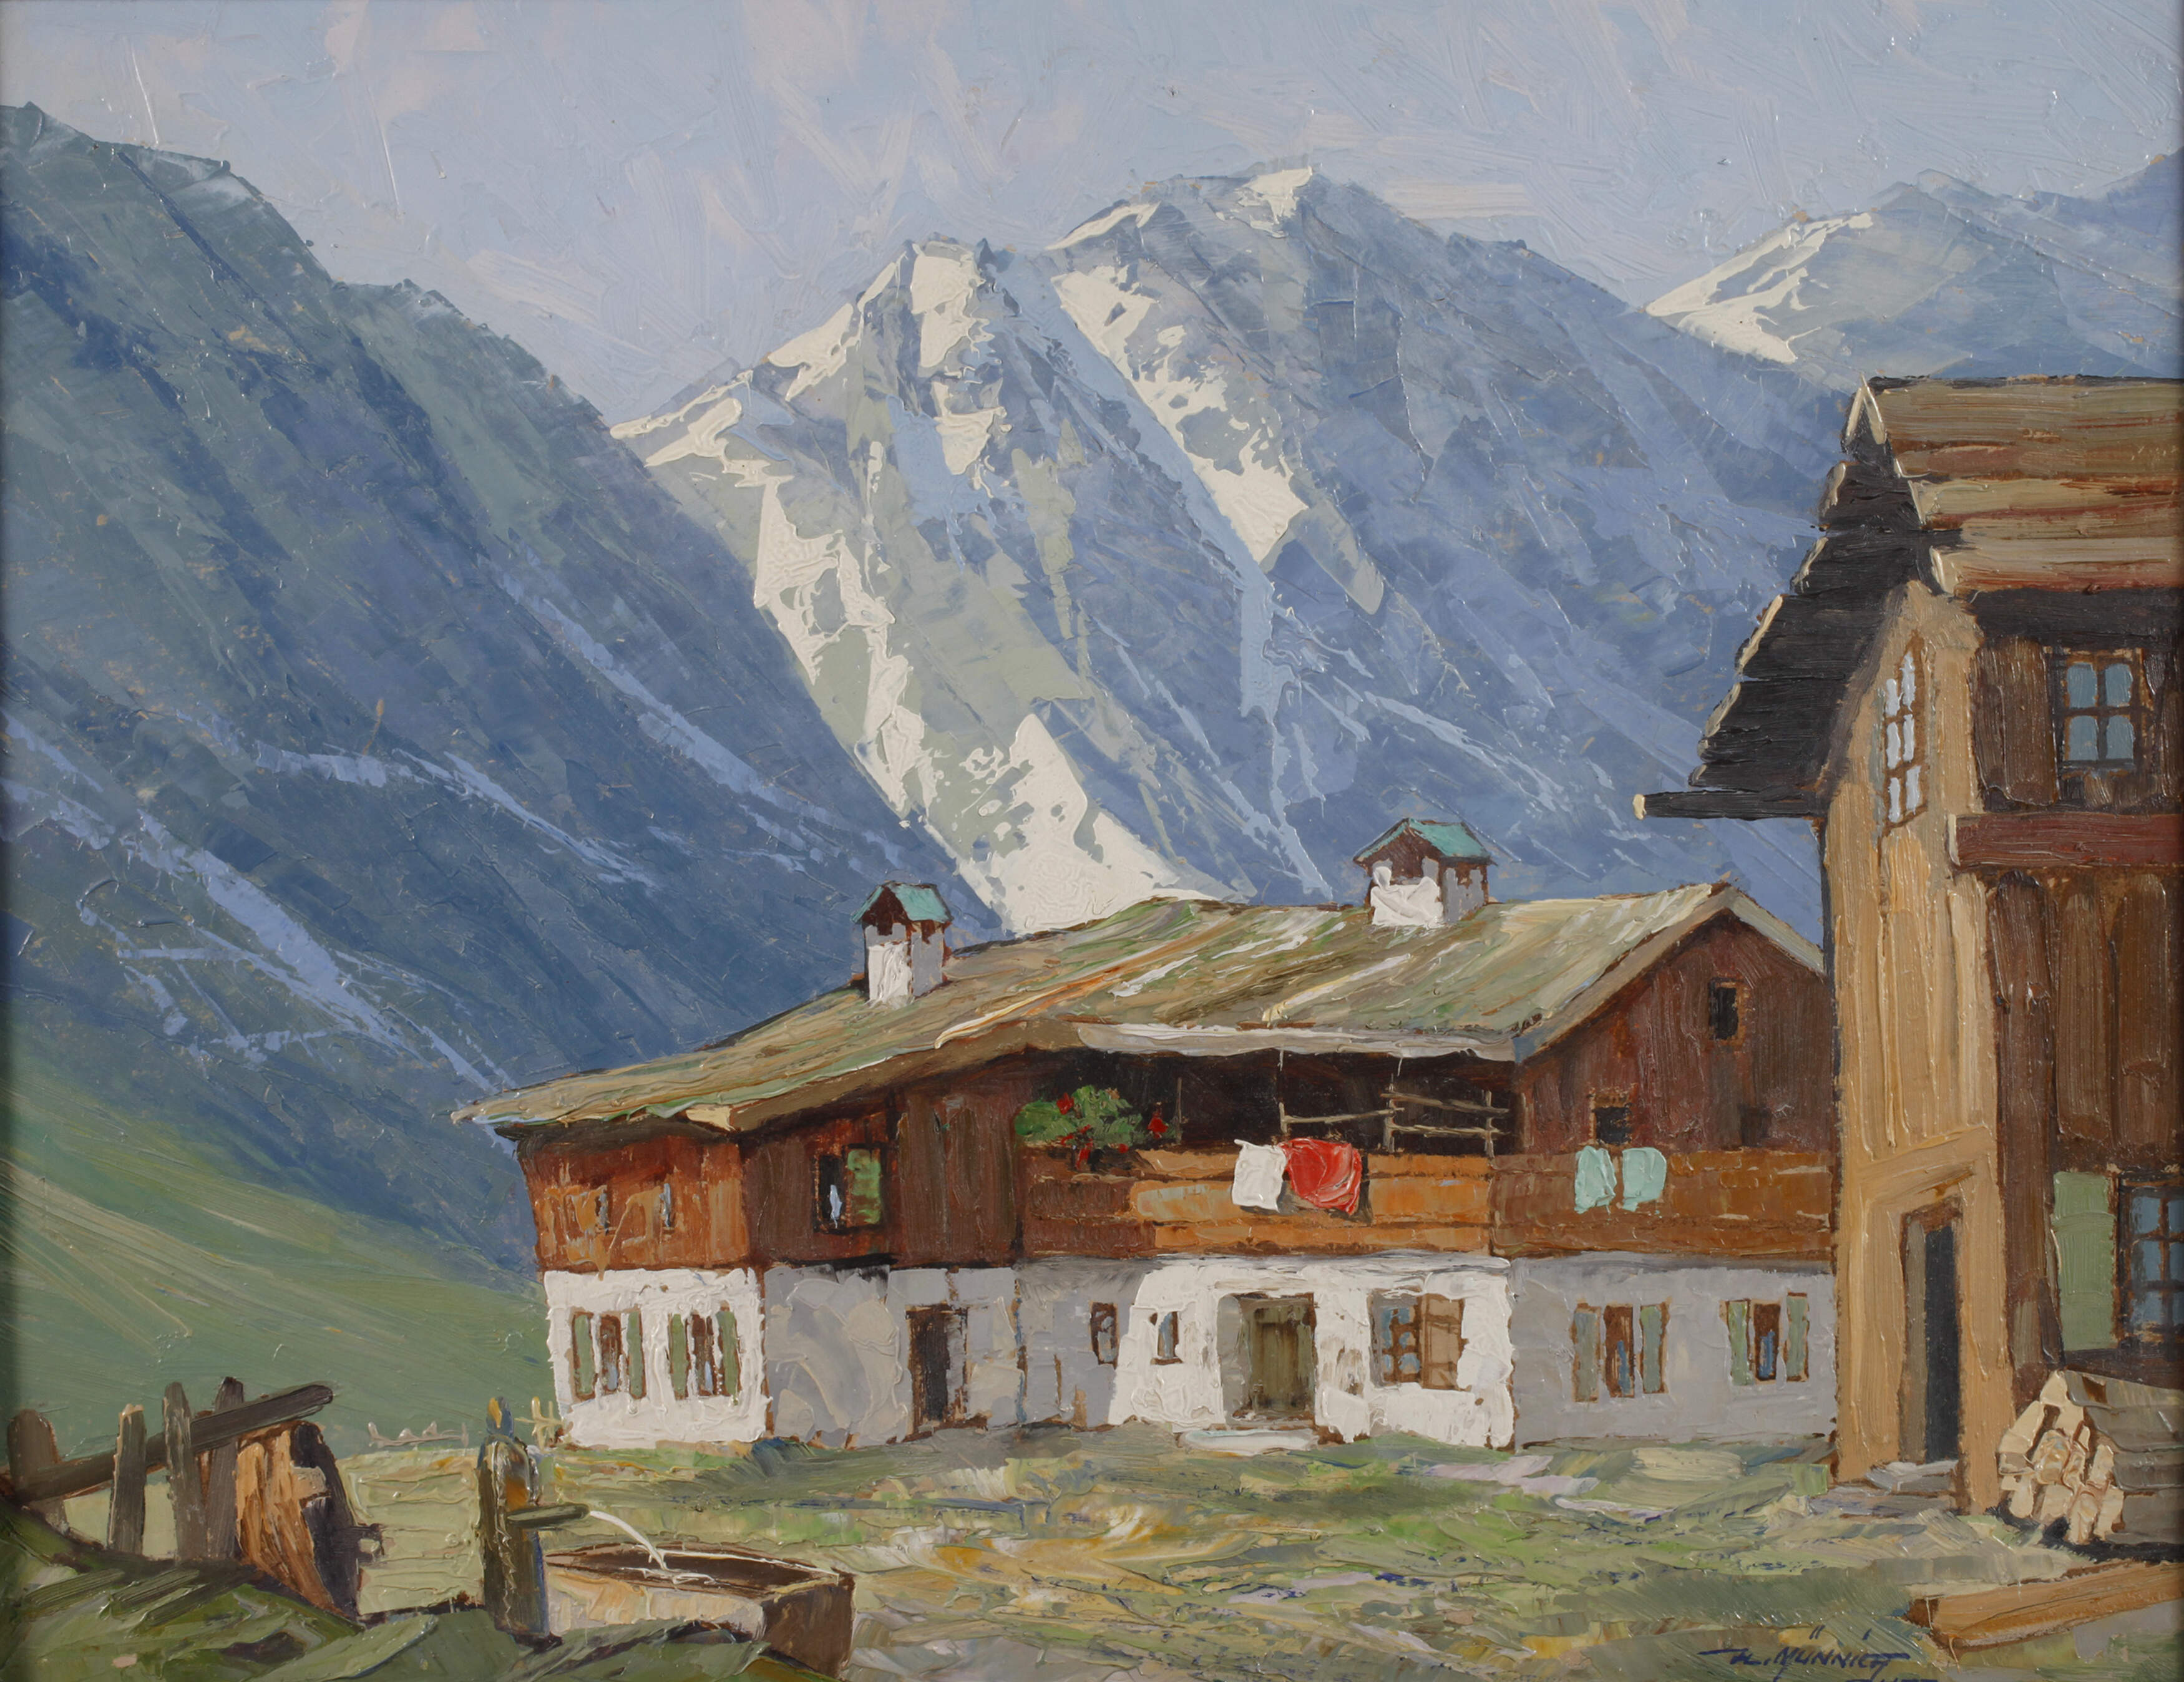 Heinz Münnich, "Alte Häuser in den Hohen Tauern"